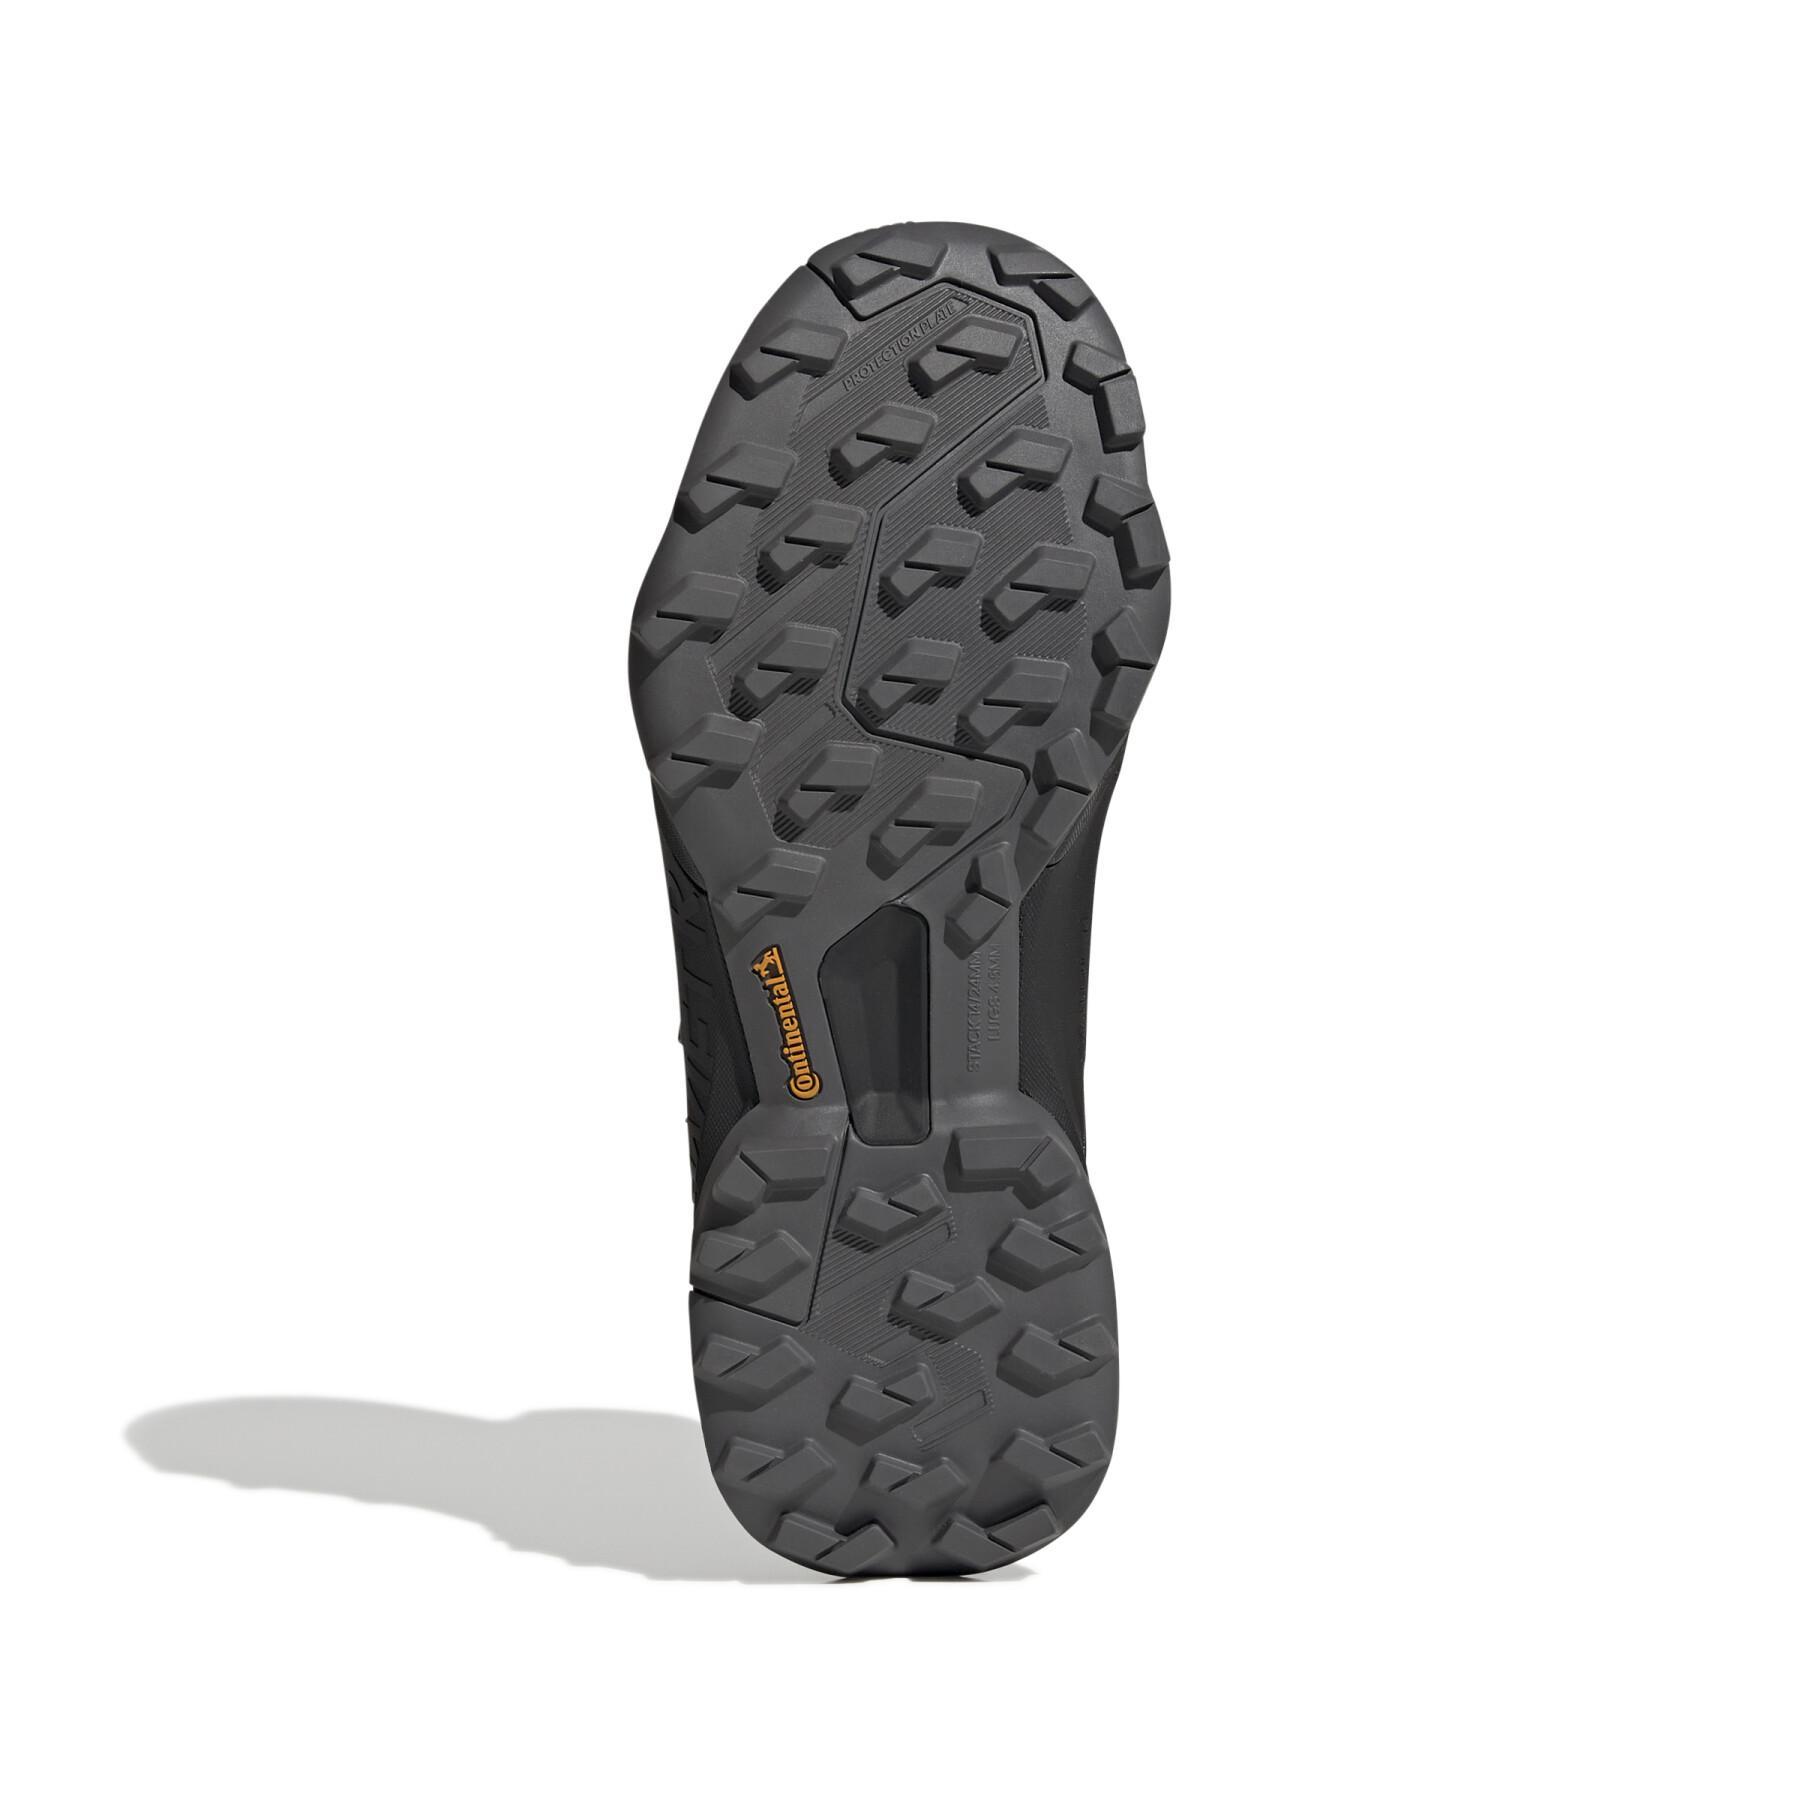 Zapatillas de senderismo para mujer adidas 180 Terrex Swift R3 GORE-TEX